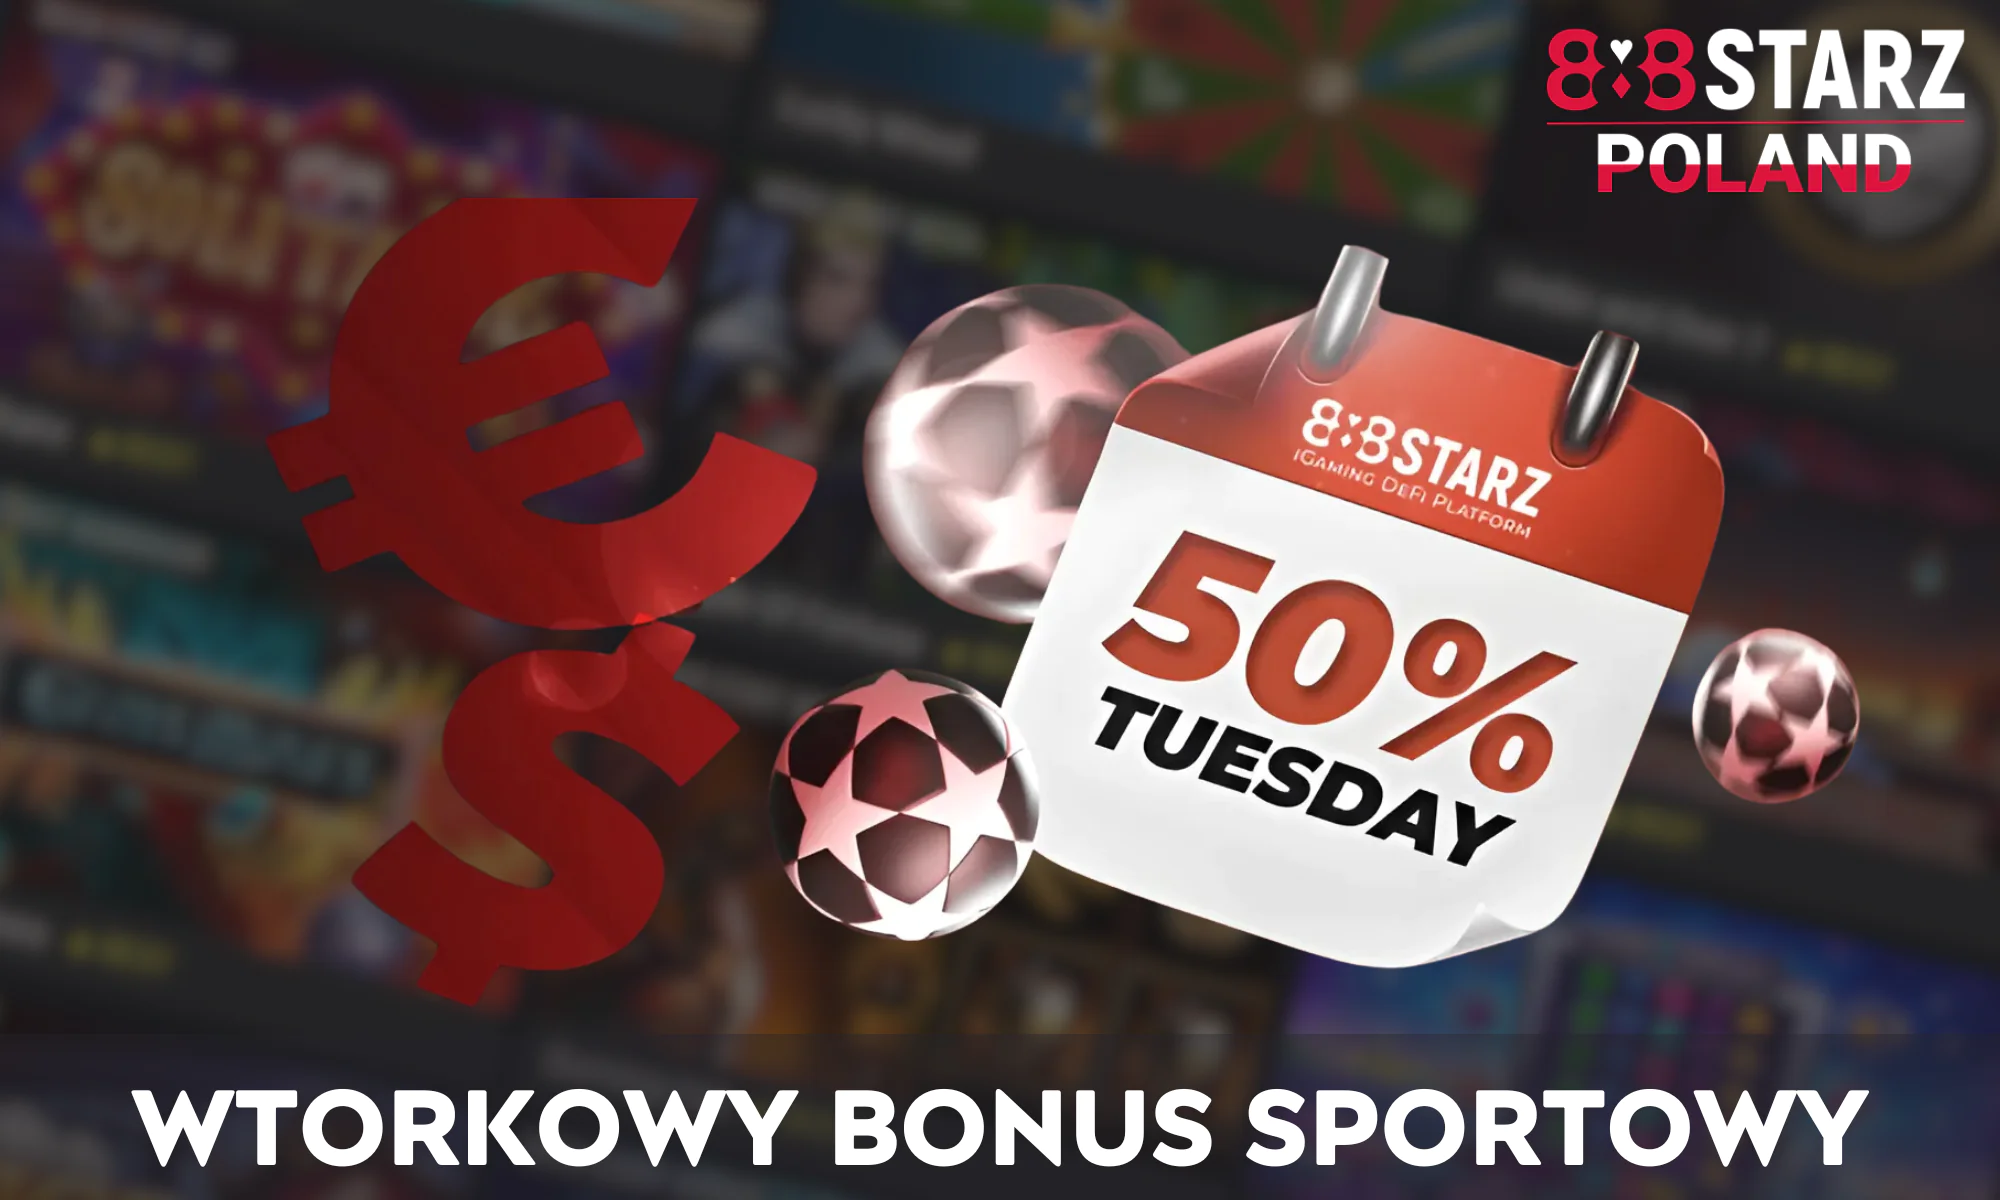 W każdy wtorek fani sportu w 888Starz mogą otrzymać 50% bonus od depozytu